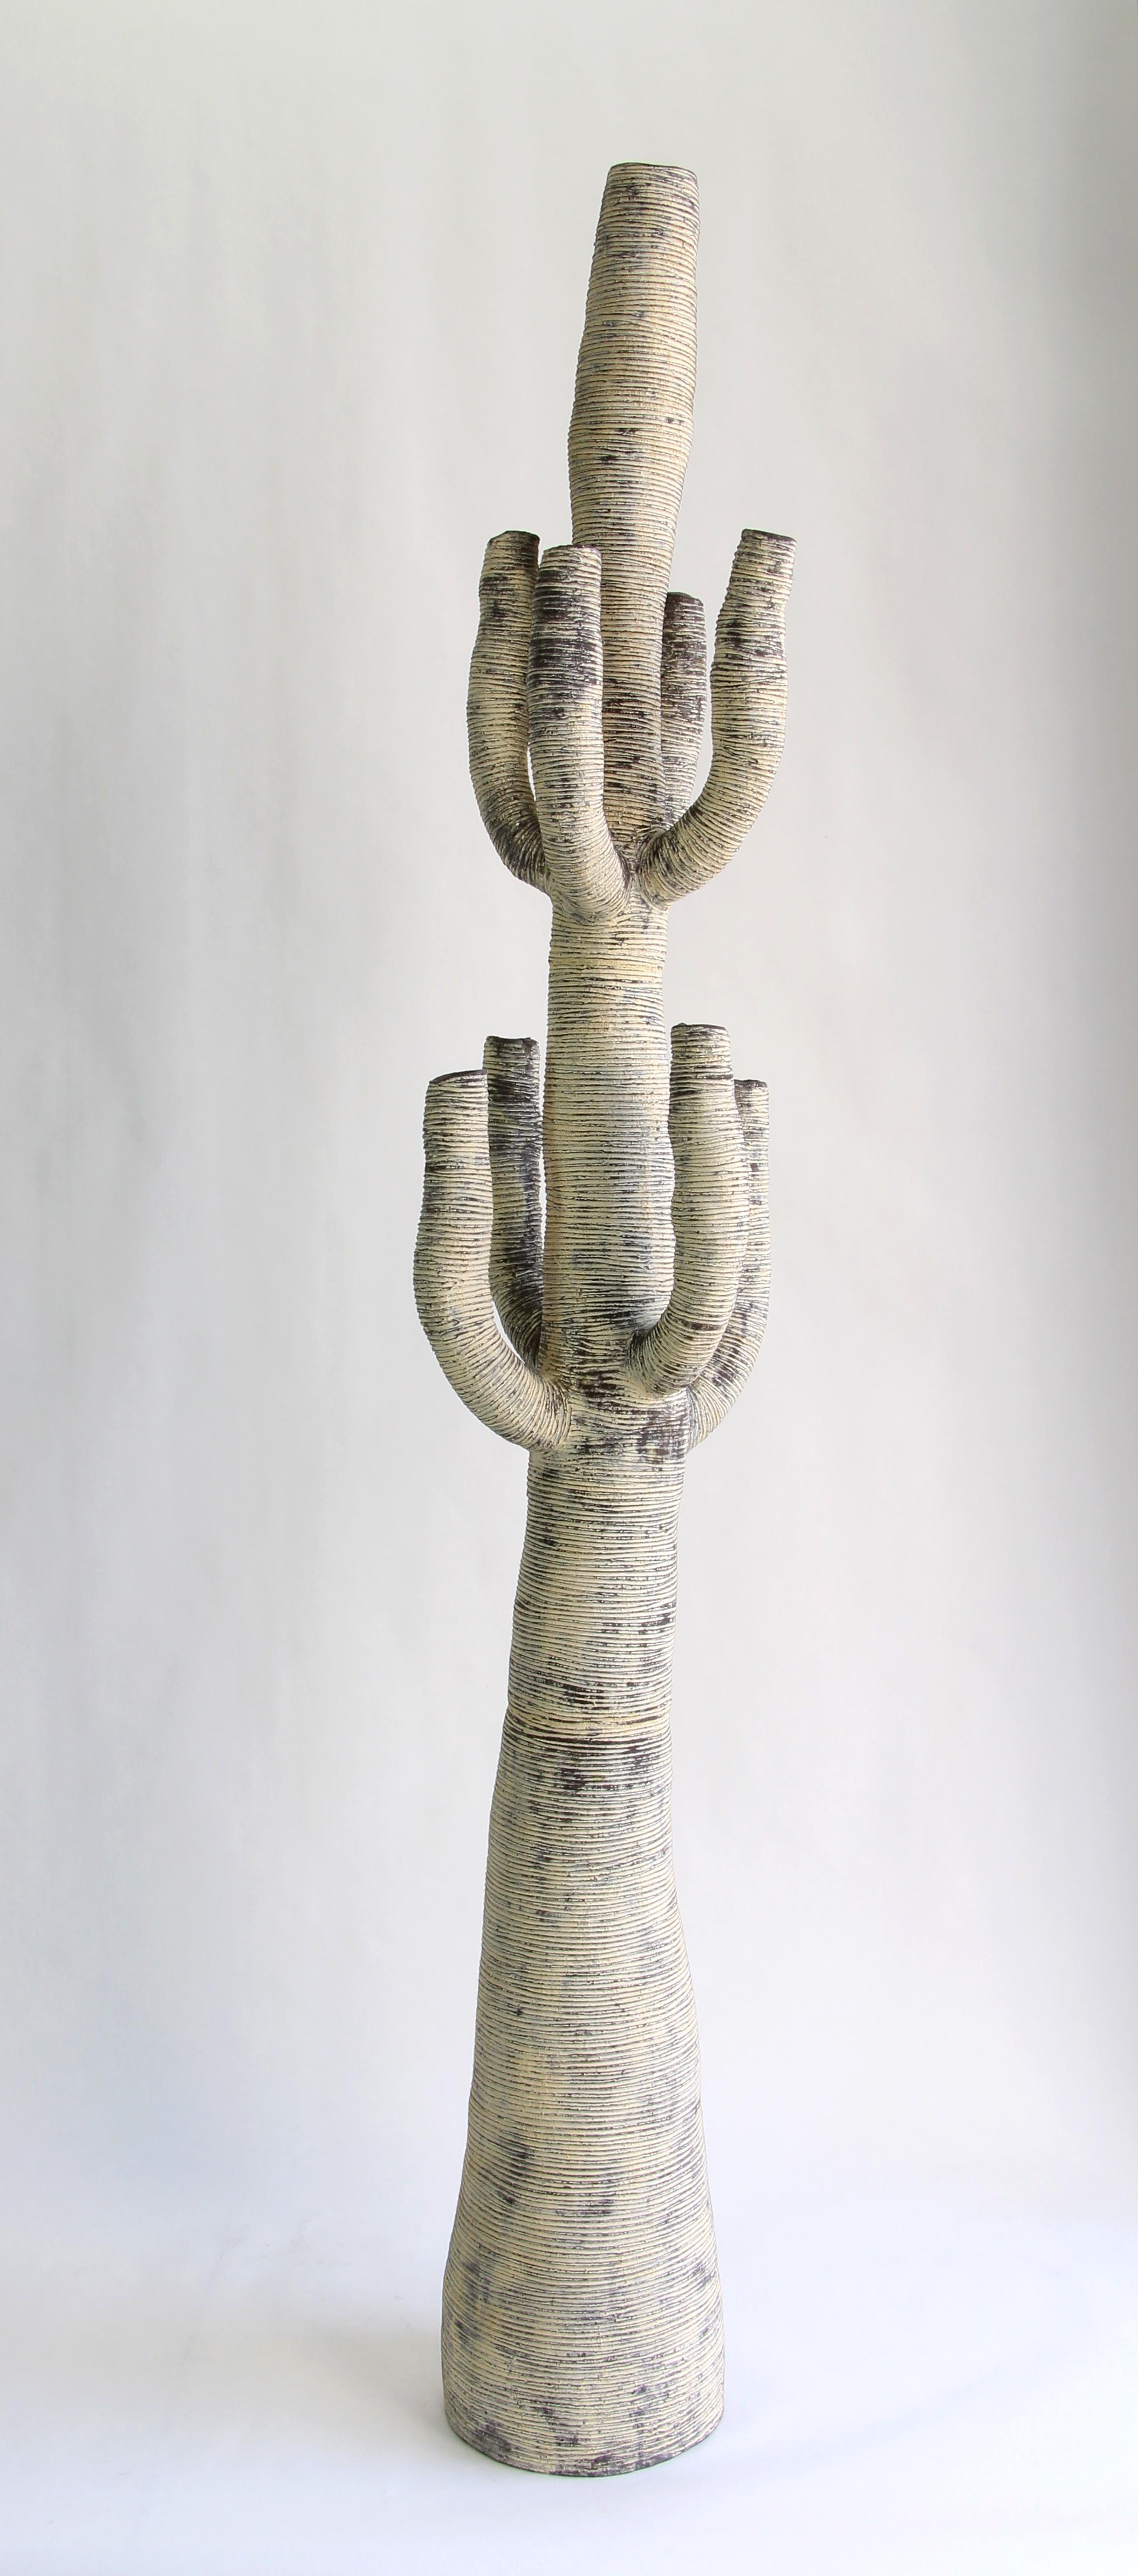 Minimalist Large Contemporary Black and White Ceramic Cactus Sculpture, Grand Cactus N & B